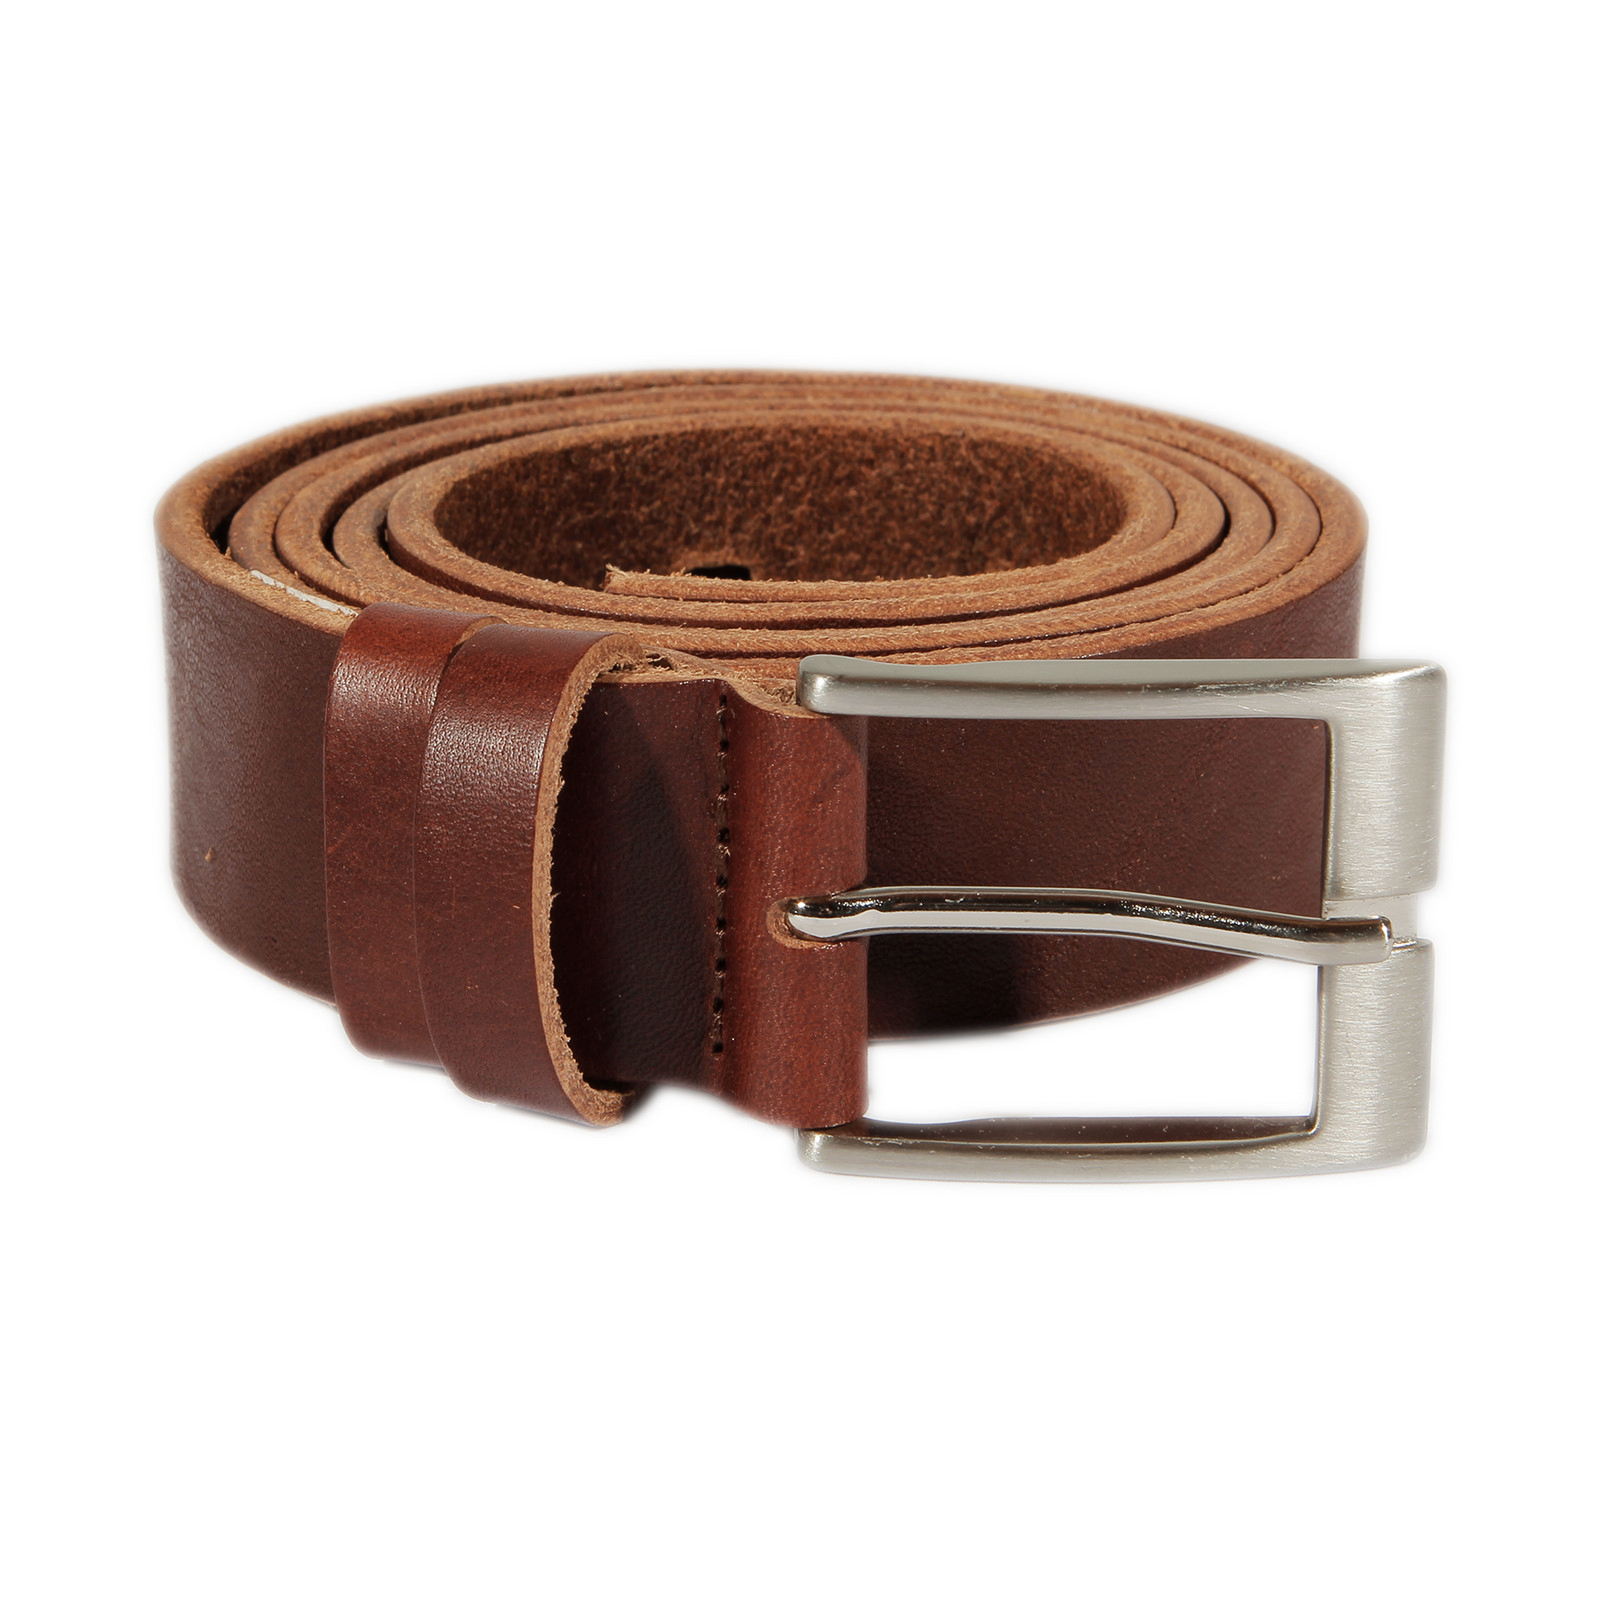 Pilsner Urquell Leather Belt Brown